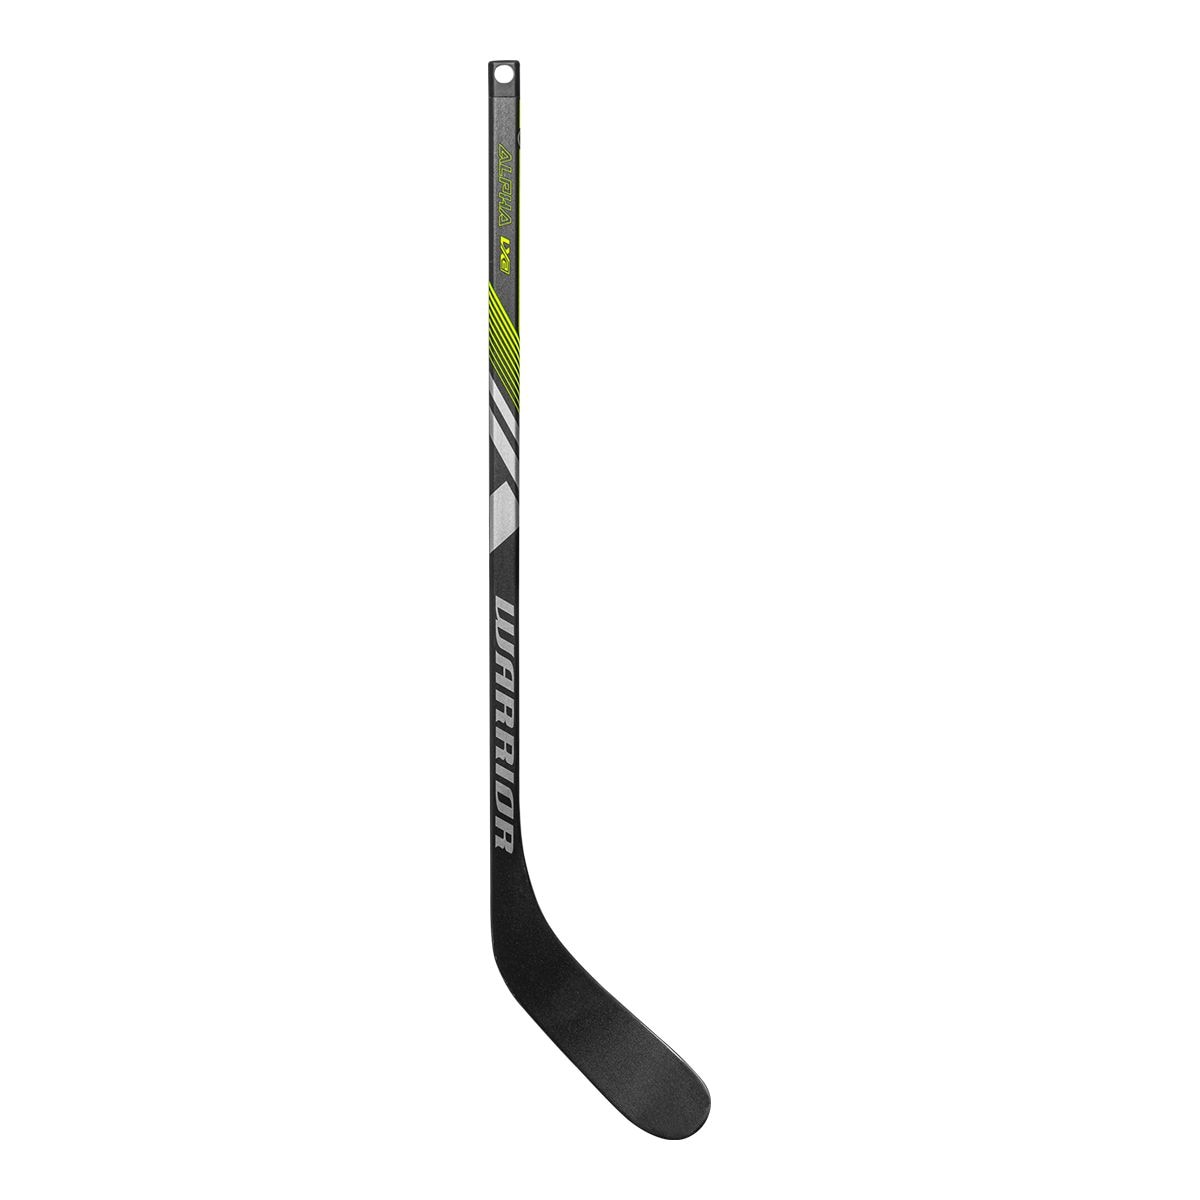 Stallion HPR 2 Ice Hockey Stick - Senior